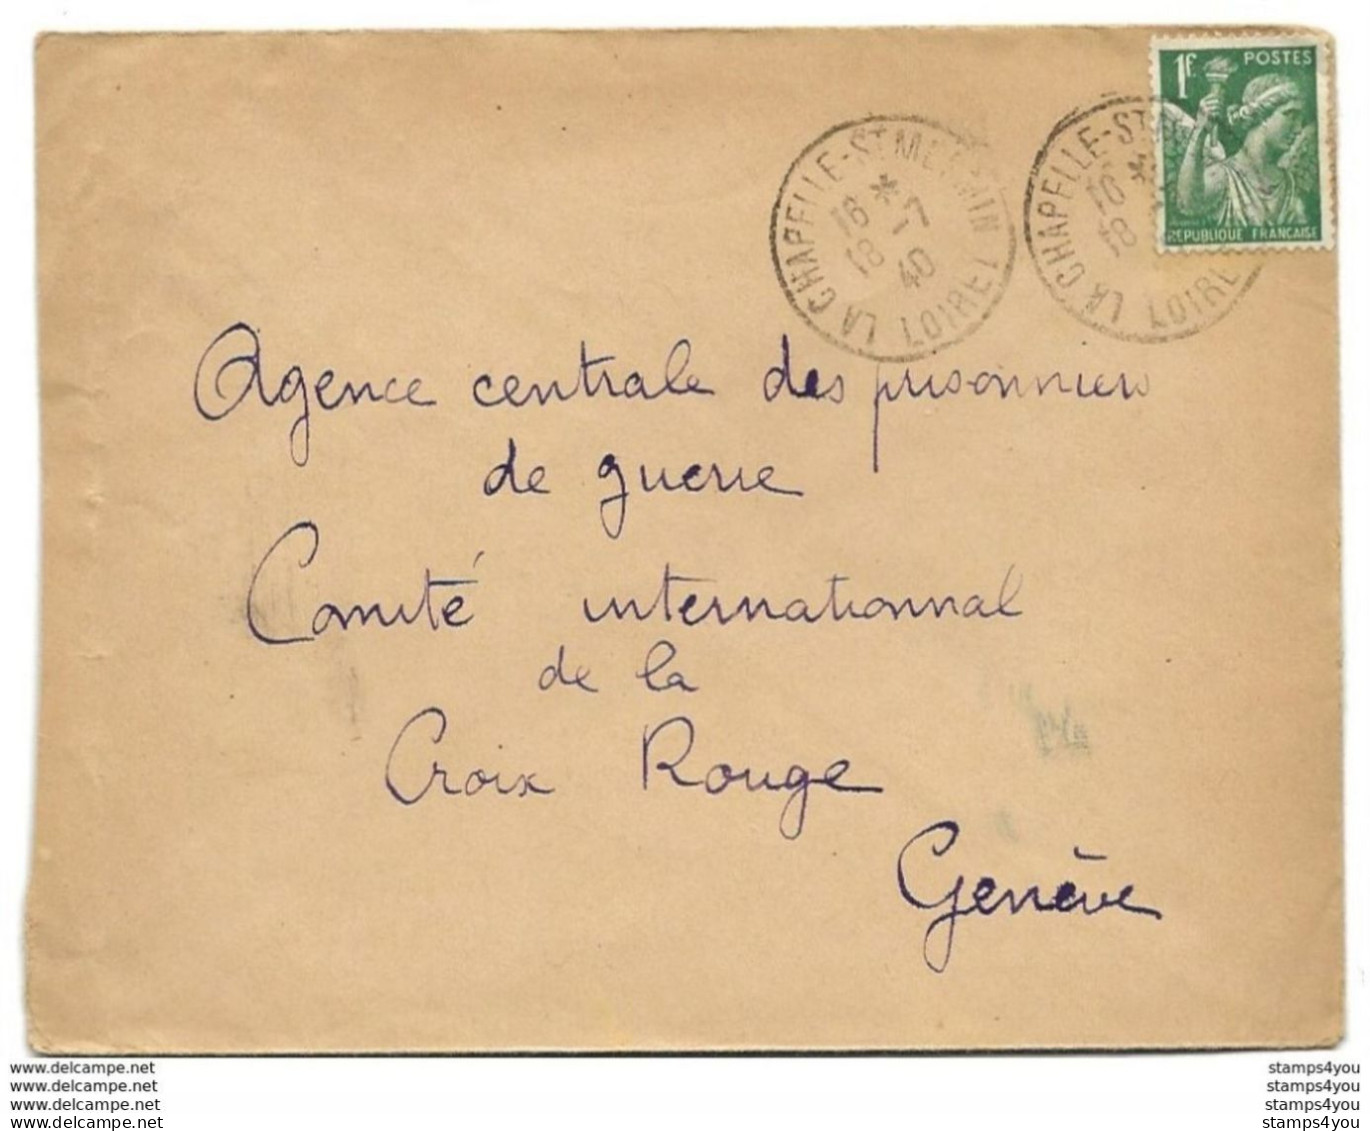 221 - 90 - Enveloppe Envoyée Du Loiret à La Croix Rouge Genève 1940 - Agence Prisonniers De Guerre - Guerre De 1939-45